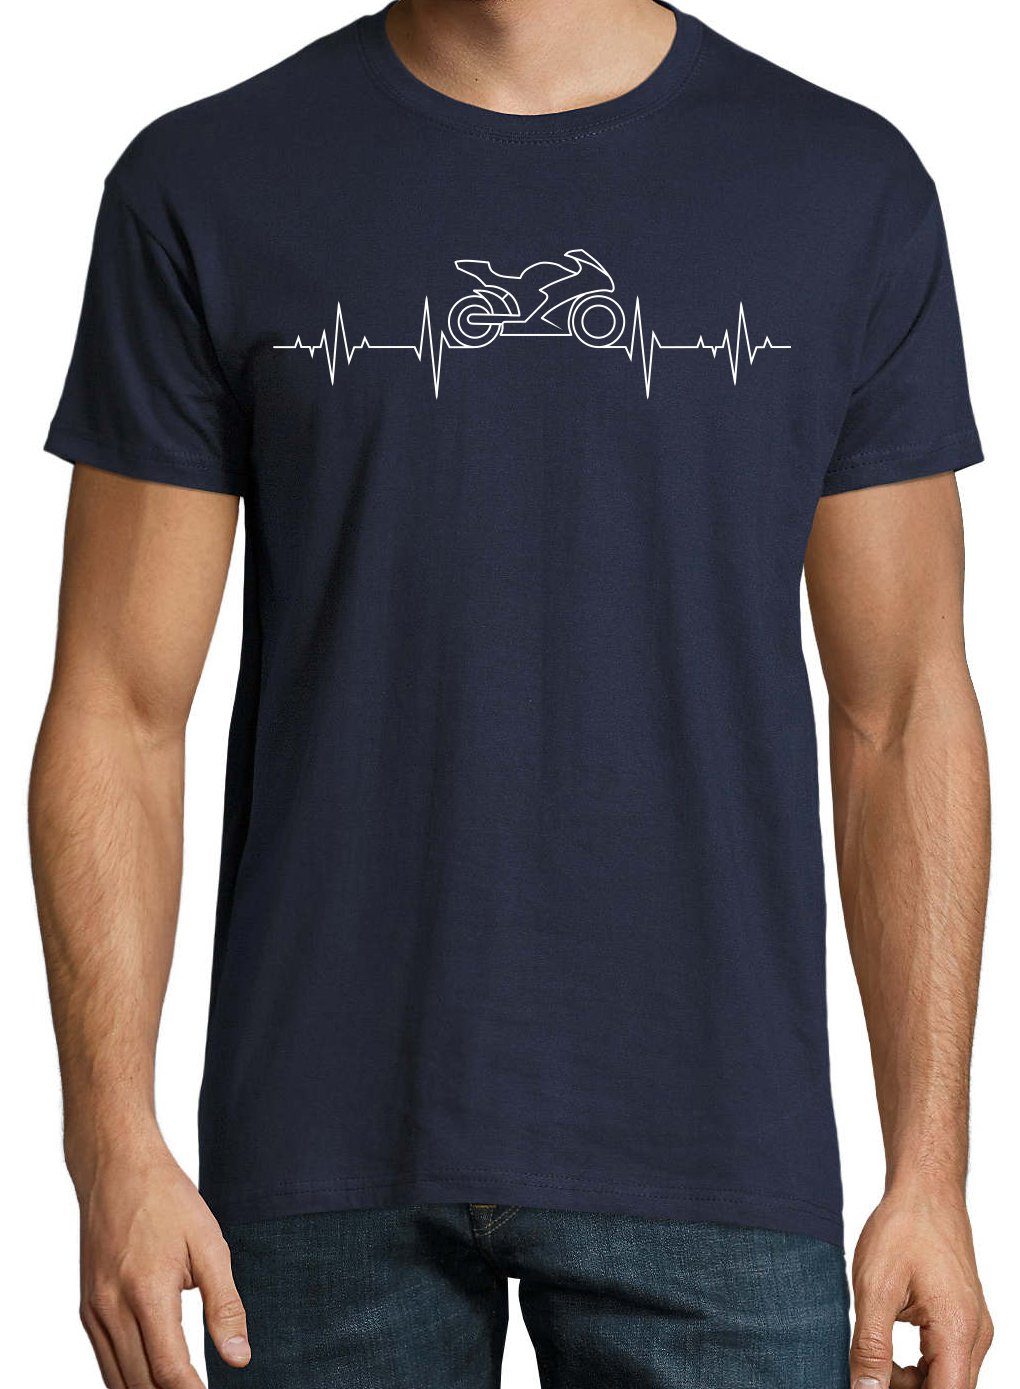 Print-Shirt Herren Aufdruck Youth Bike mit Navyblau modischem Designz Heartbeat T-Shirt Motorrad